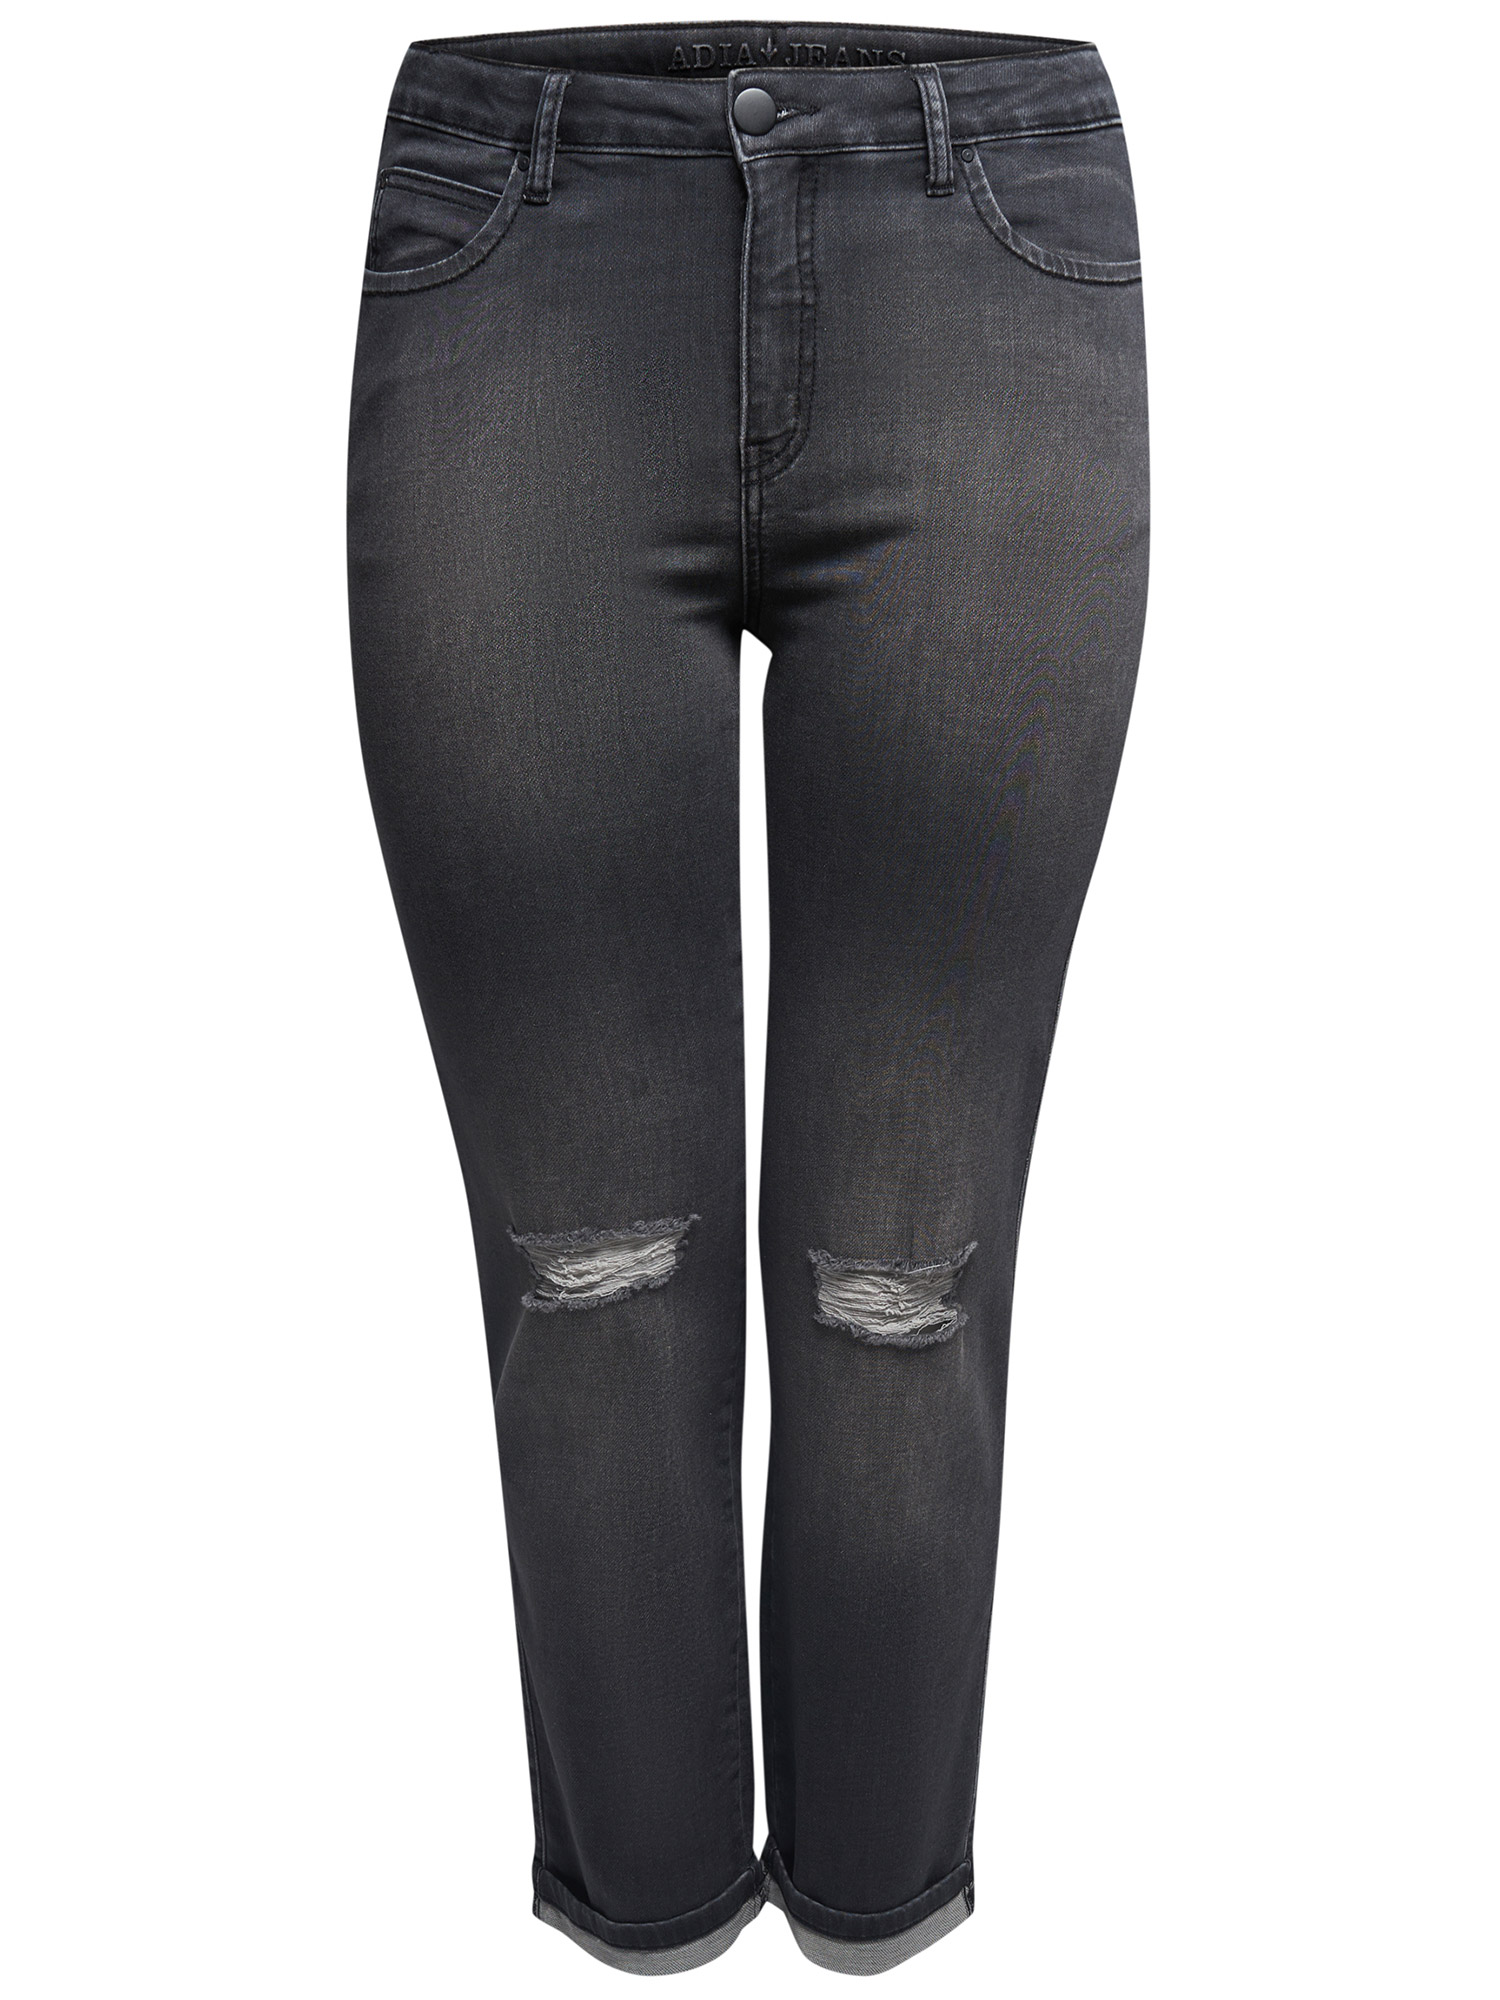 svartgrå jeans med slitage på knäna fra Adia